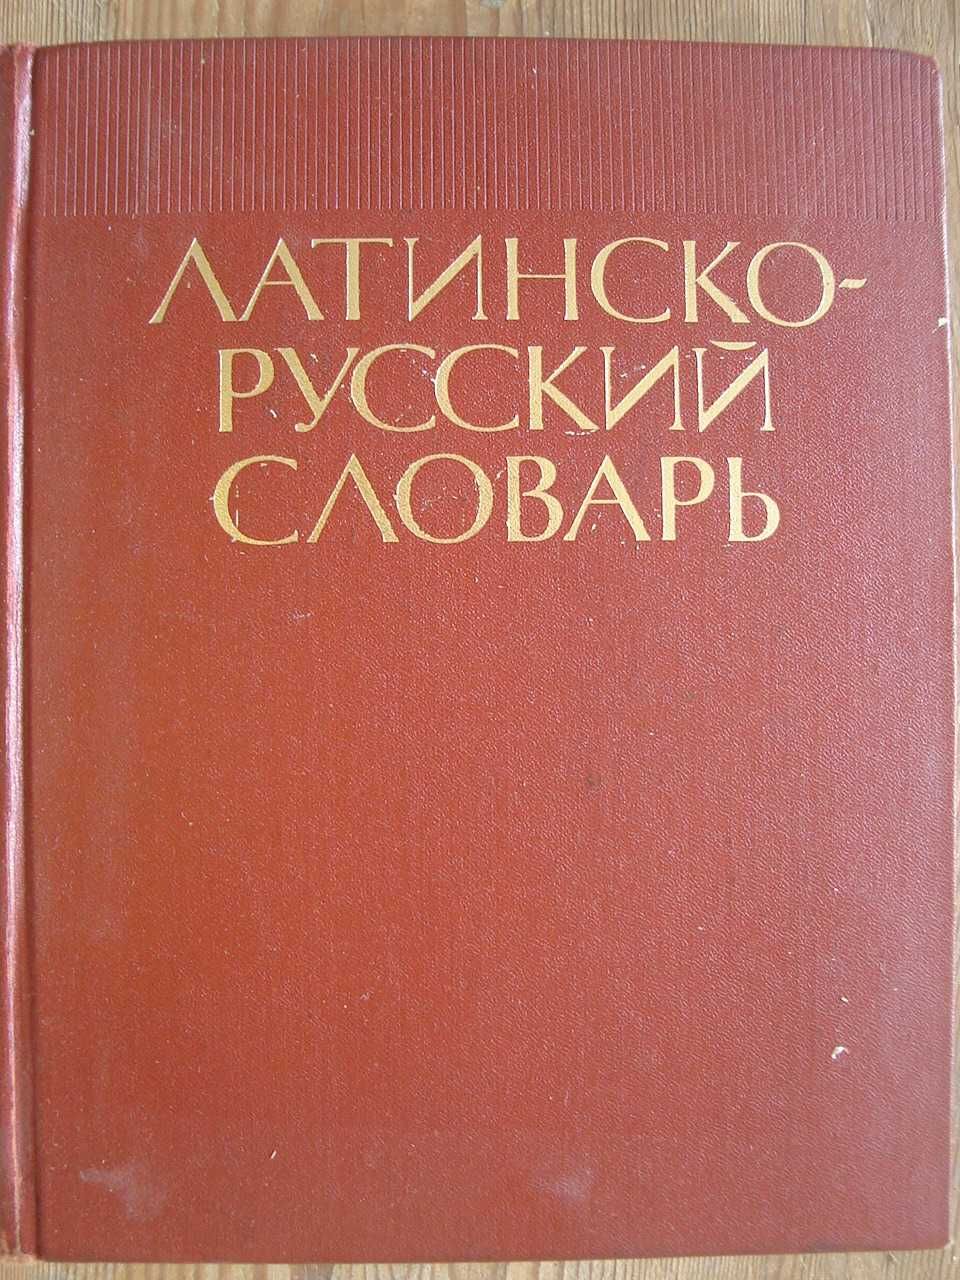 Латинско-руски речник